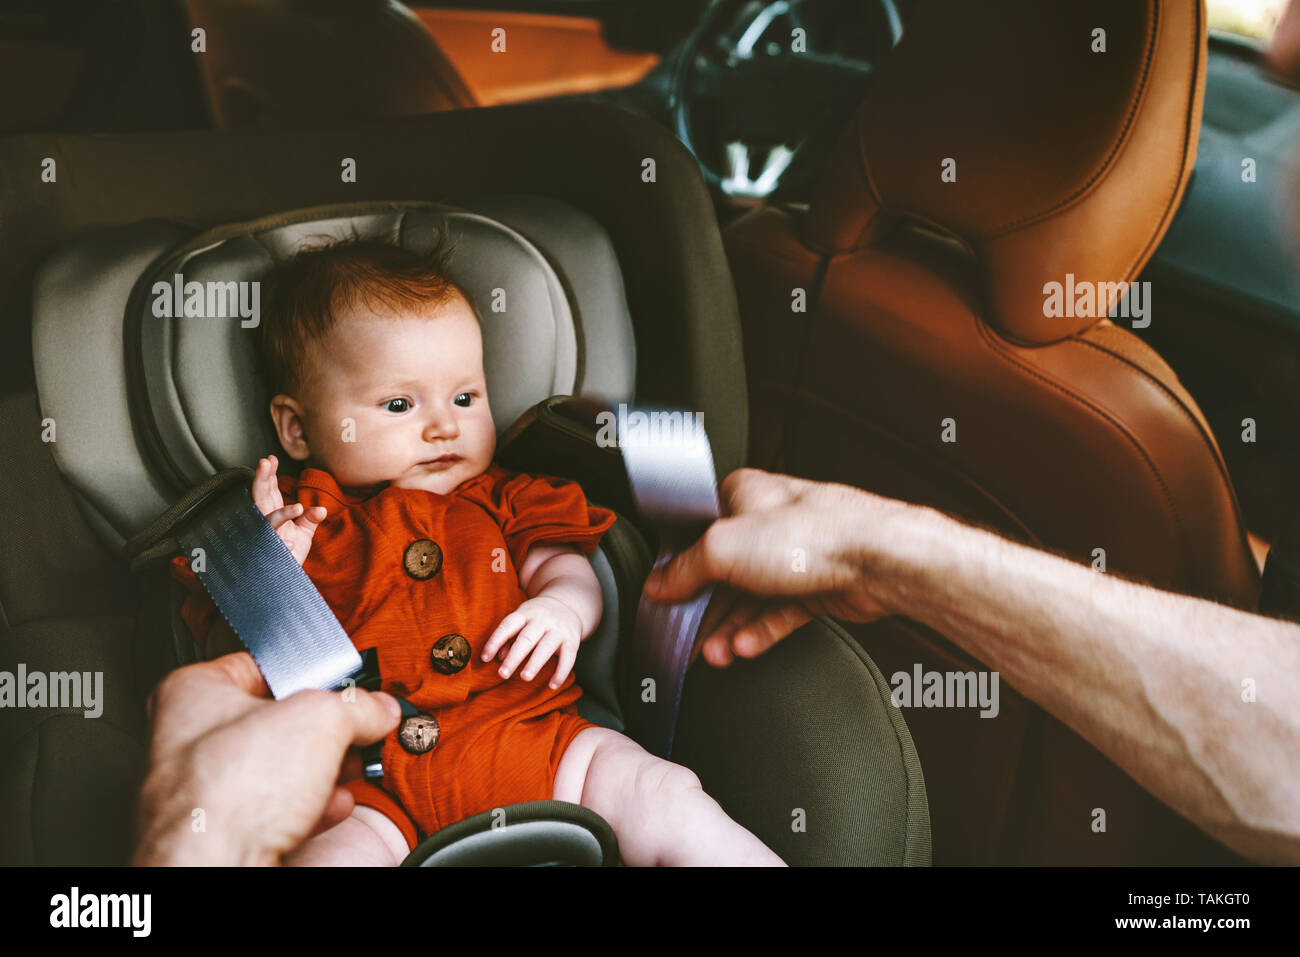 Kleinkind Baby in Sicherheit Autositz und Vater Befestigung am Gürtel mit  der Familie im Auto Lifestyle Urlaub mit Kind Sicherheit Transport  Stockfotografie - Alamy